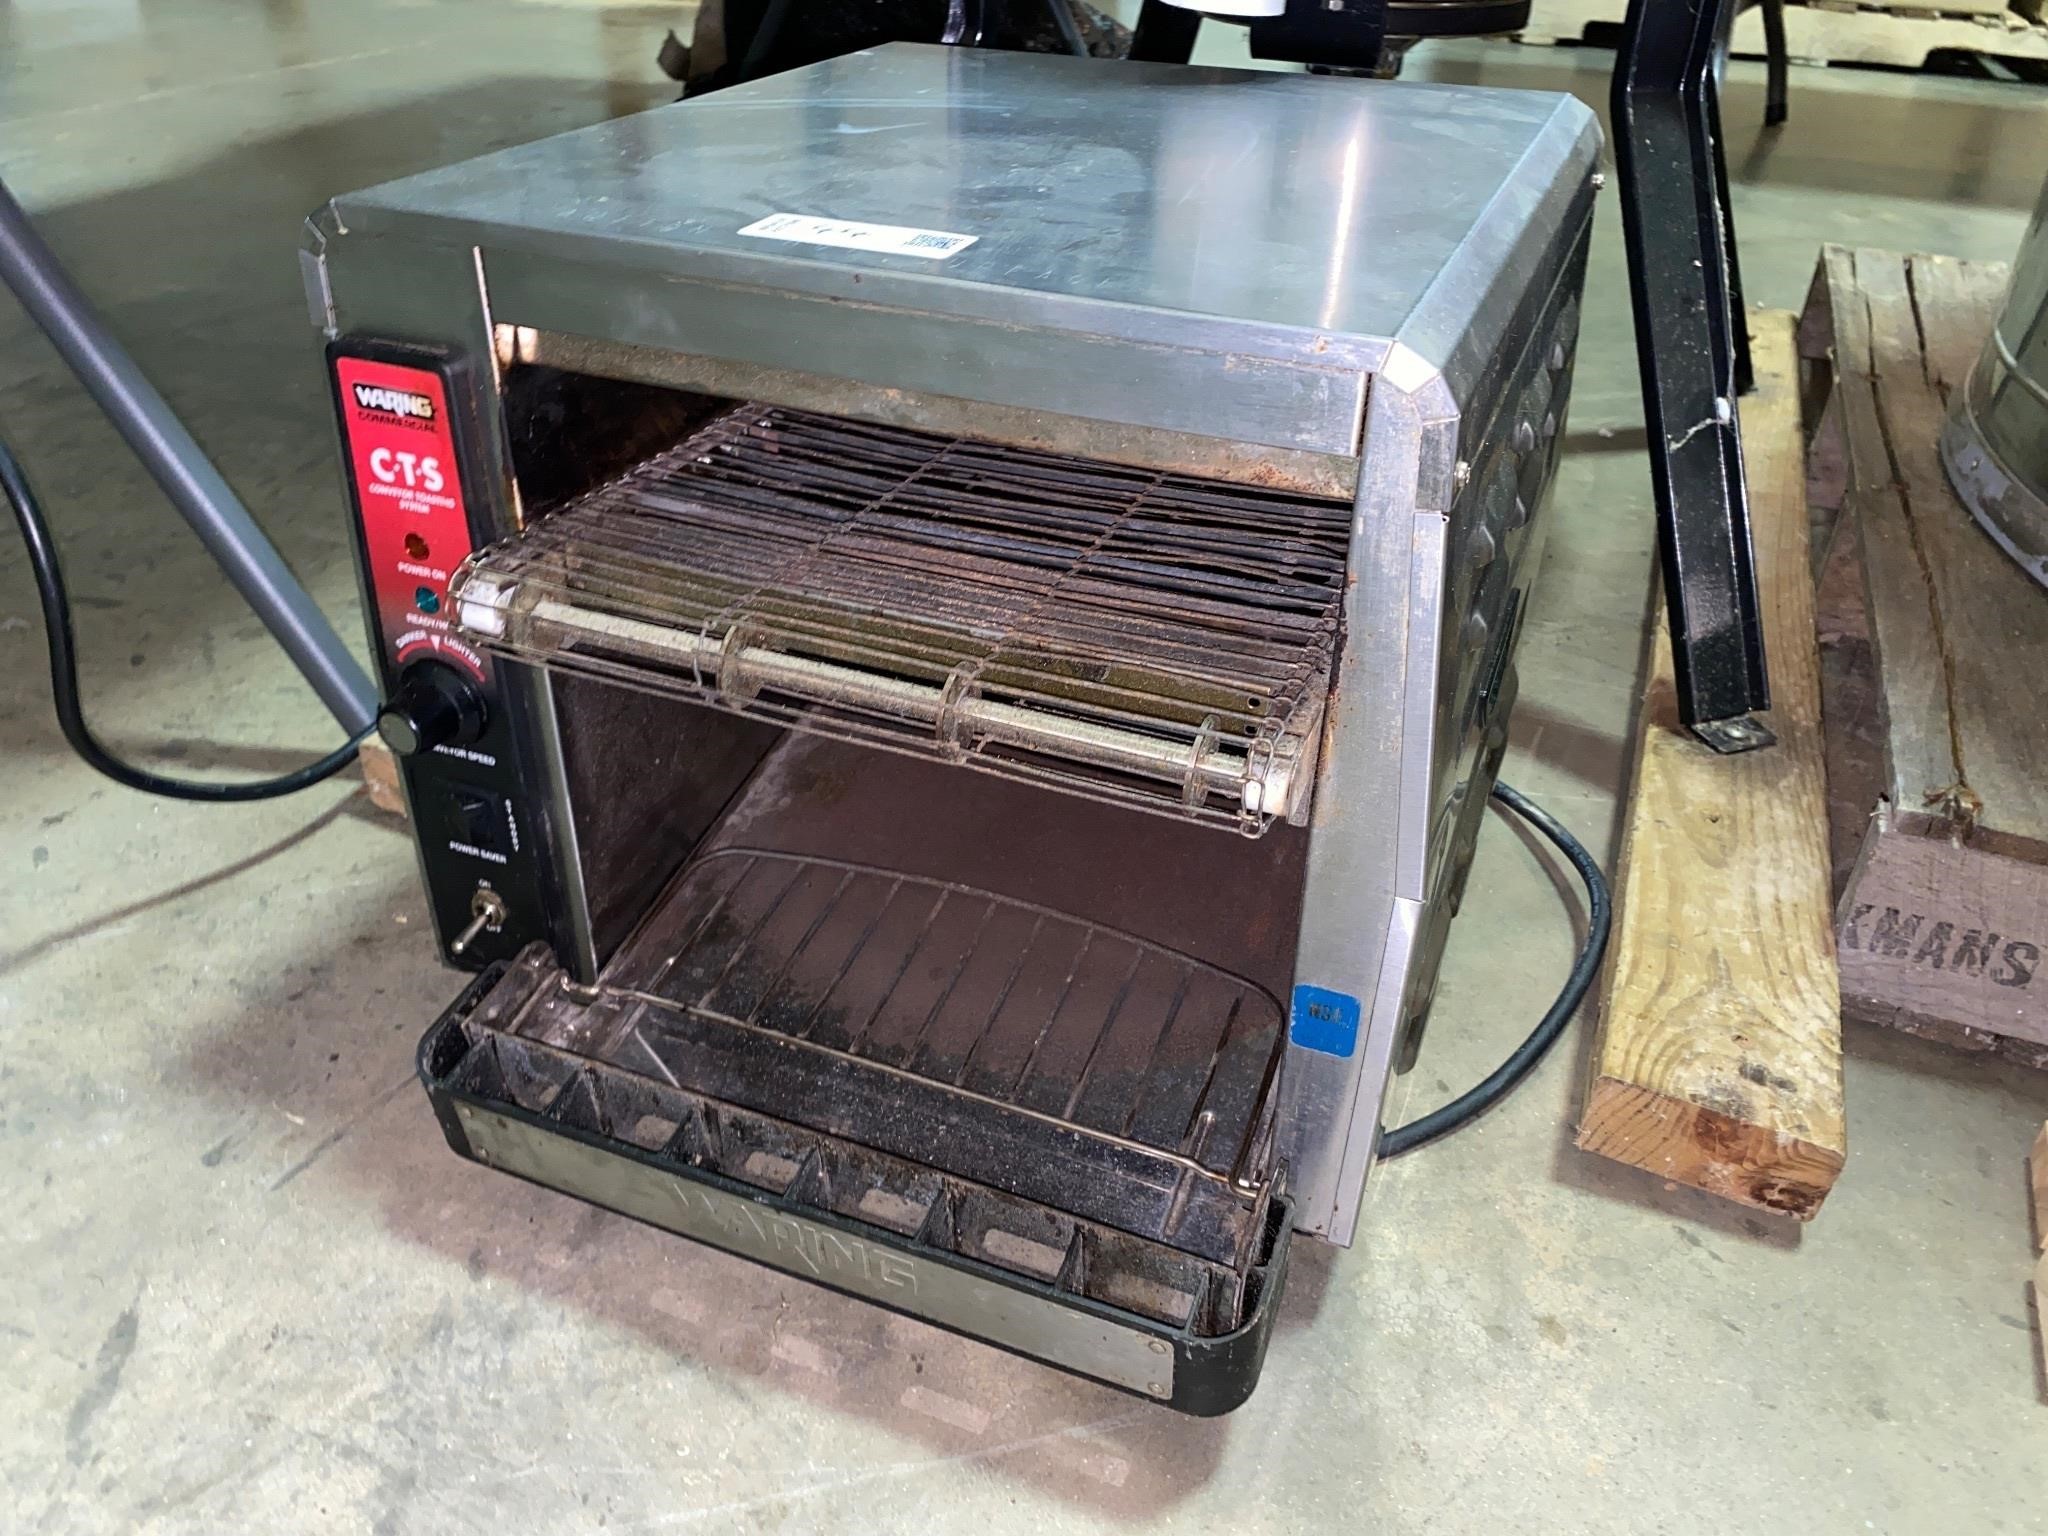 Waring Conveyor Toaster [TW]